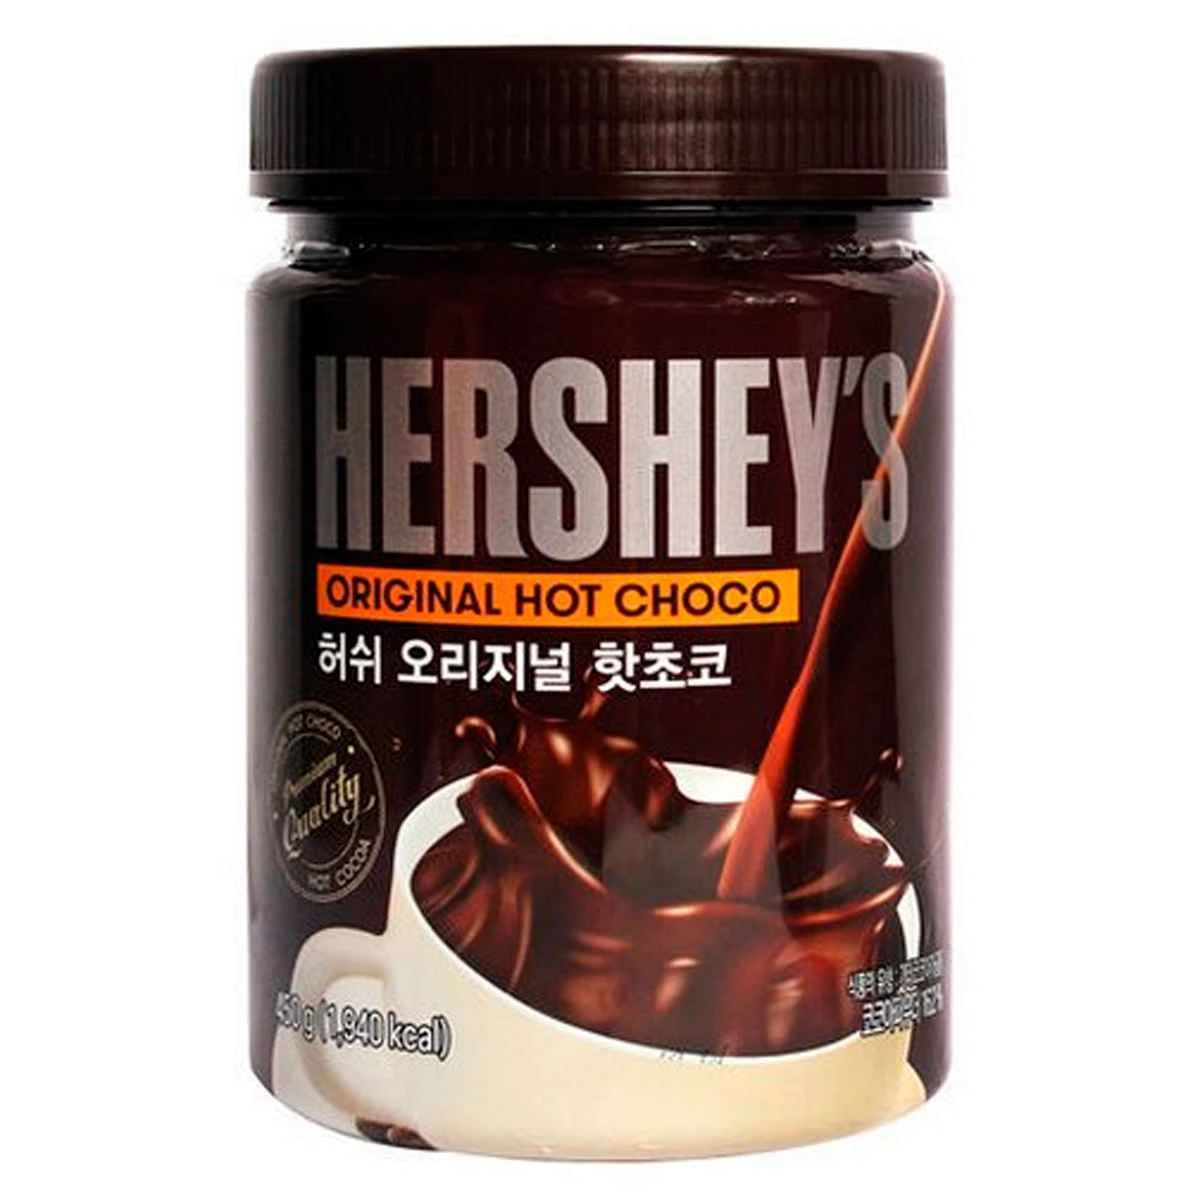 Горячий шоколад Hershey's Hot Choco Оригинальный вкус, 30 г